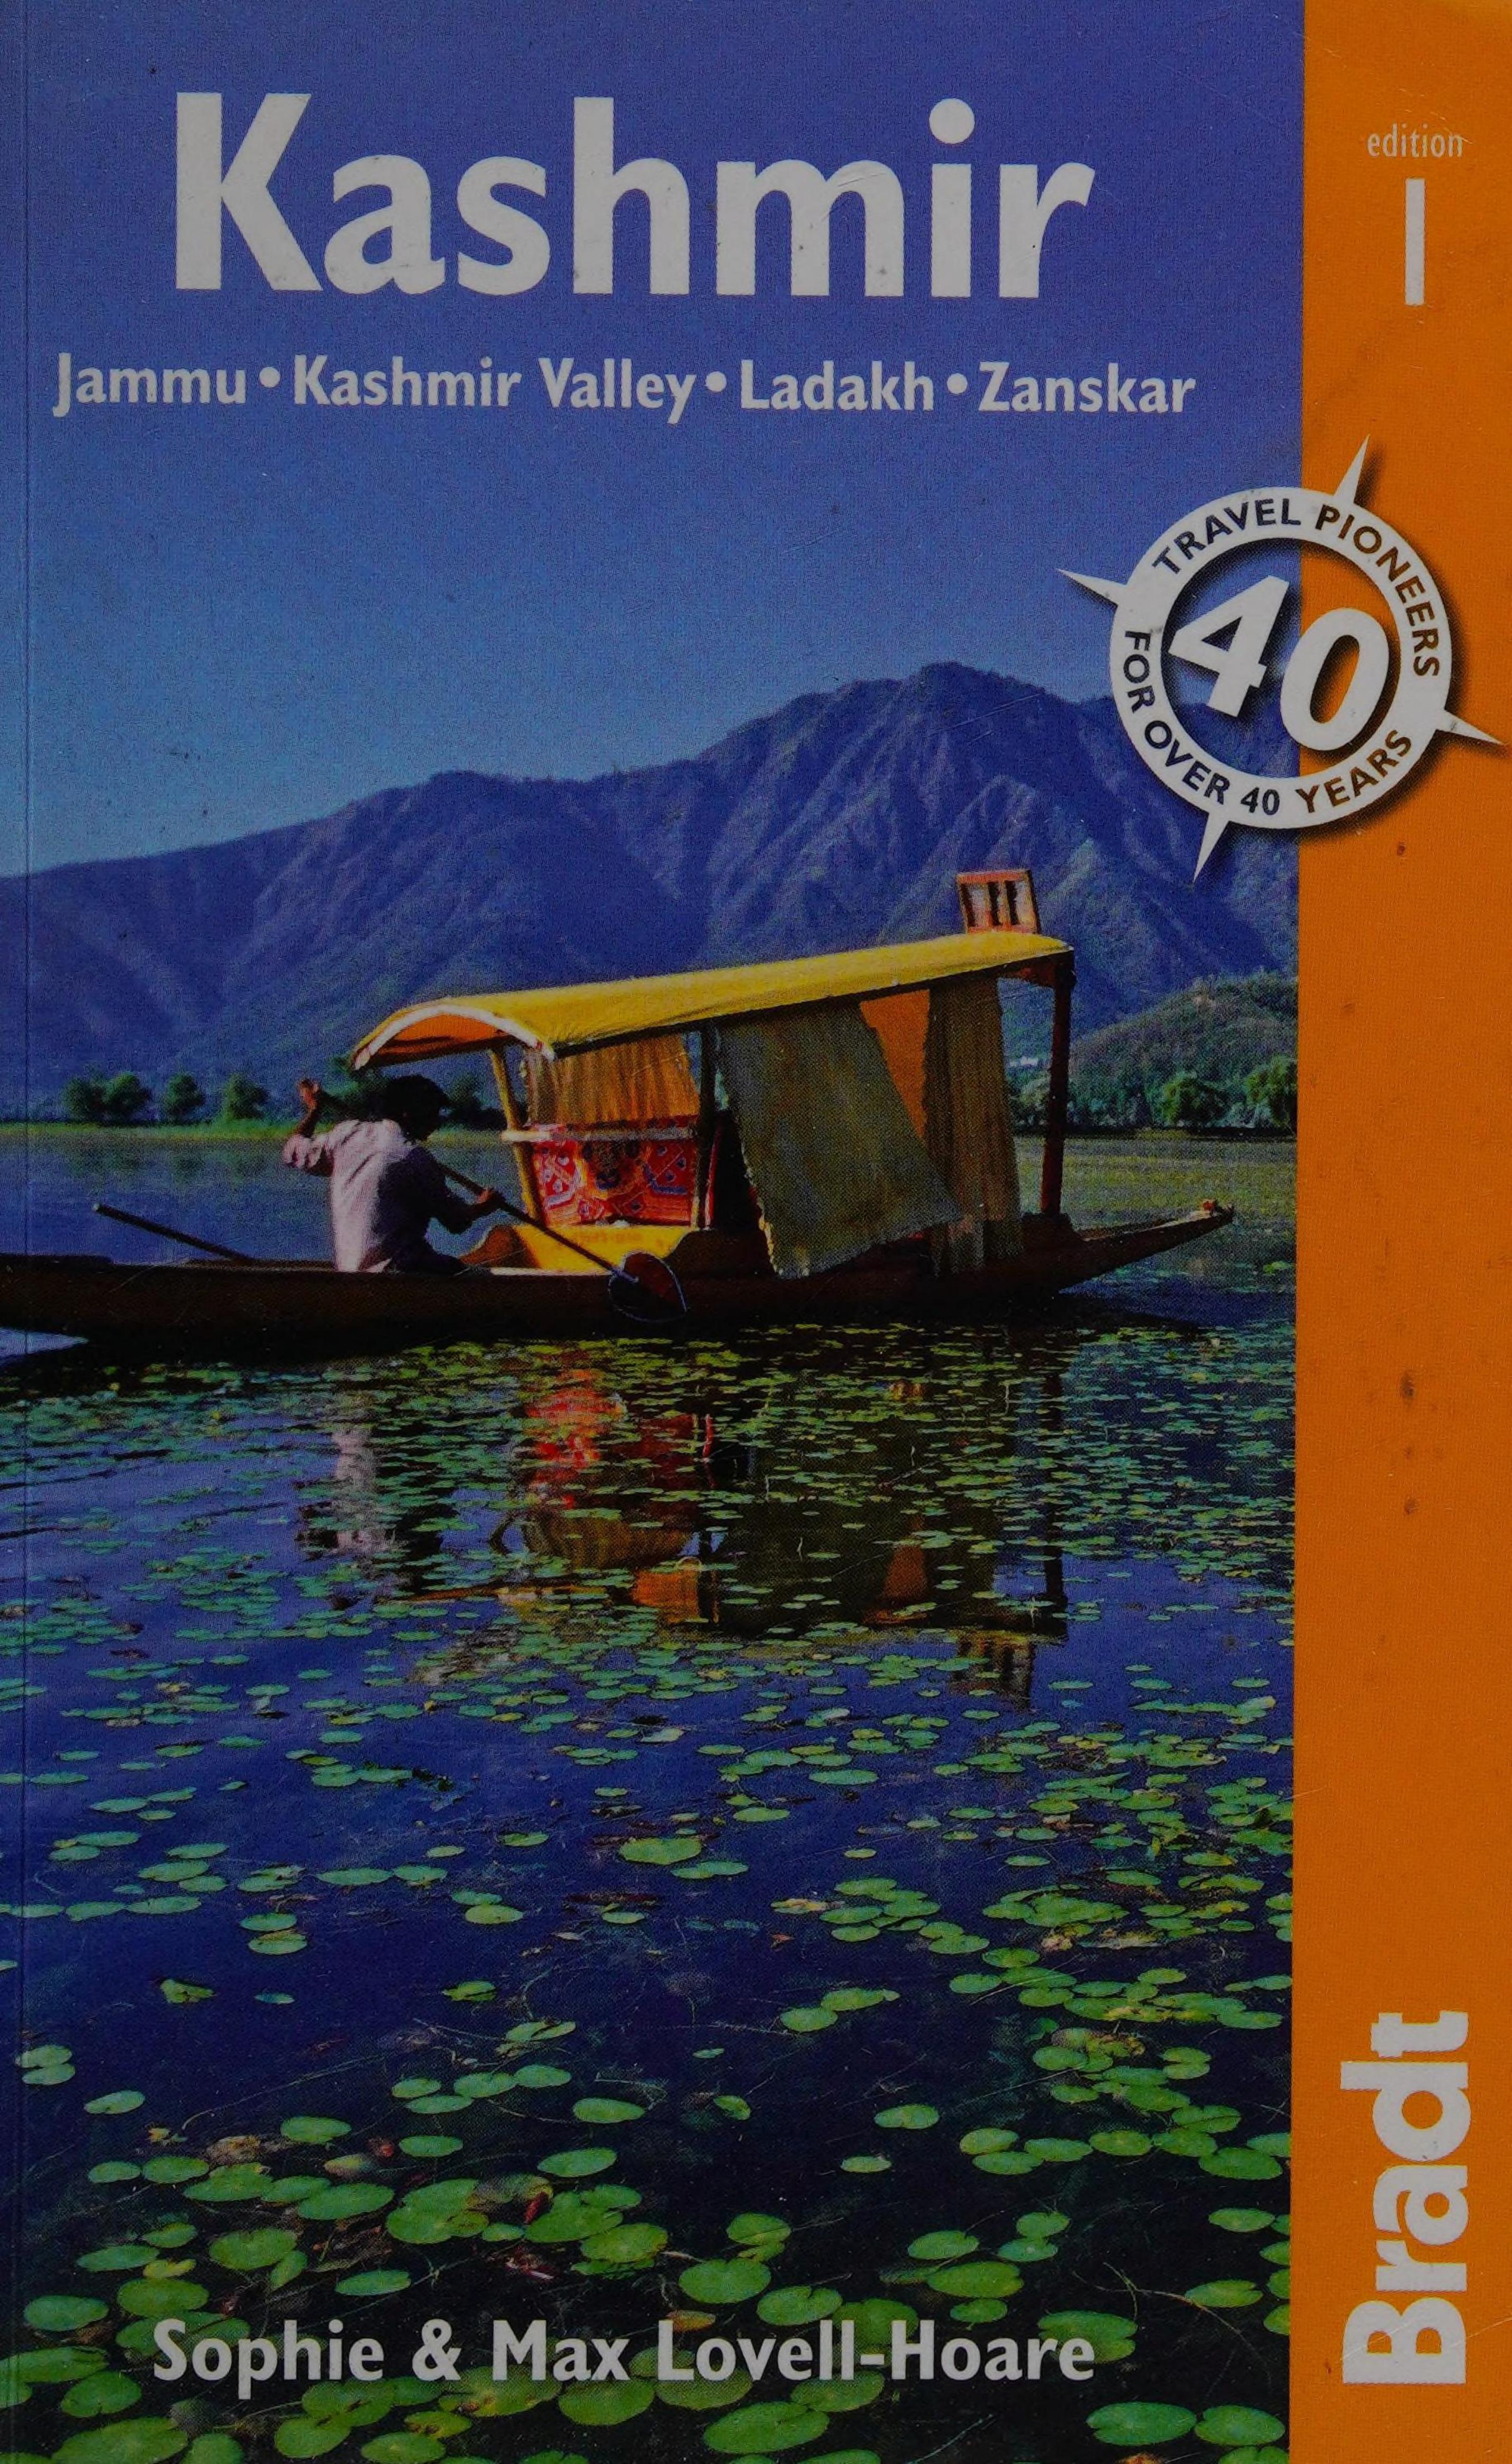 Kashmir: Jammu * Kashmir Valley * Ladakh * Zanskar: The Bradt Travel Guide by Sophie Lovell-Hoare Max Lovell-Hoare